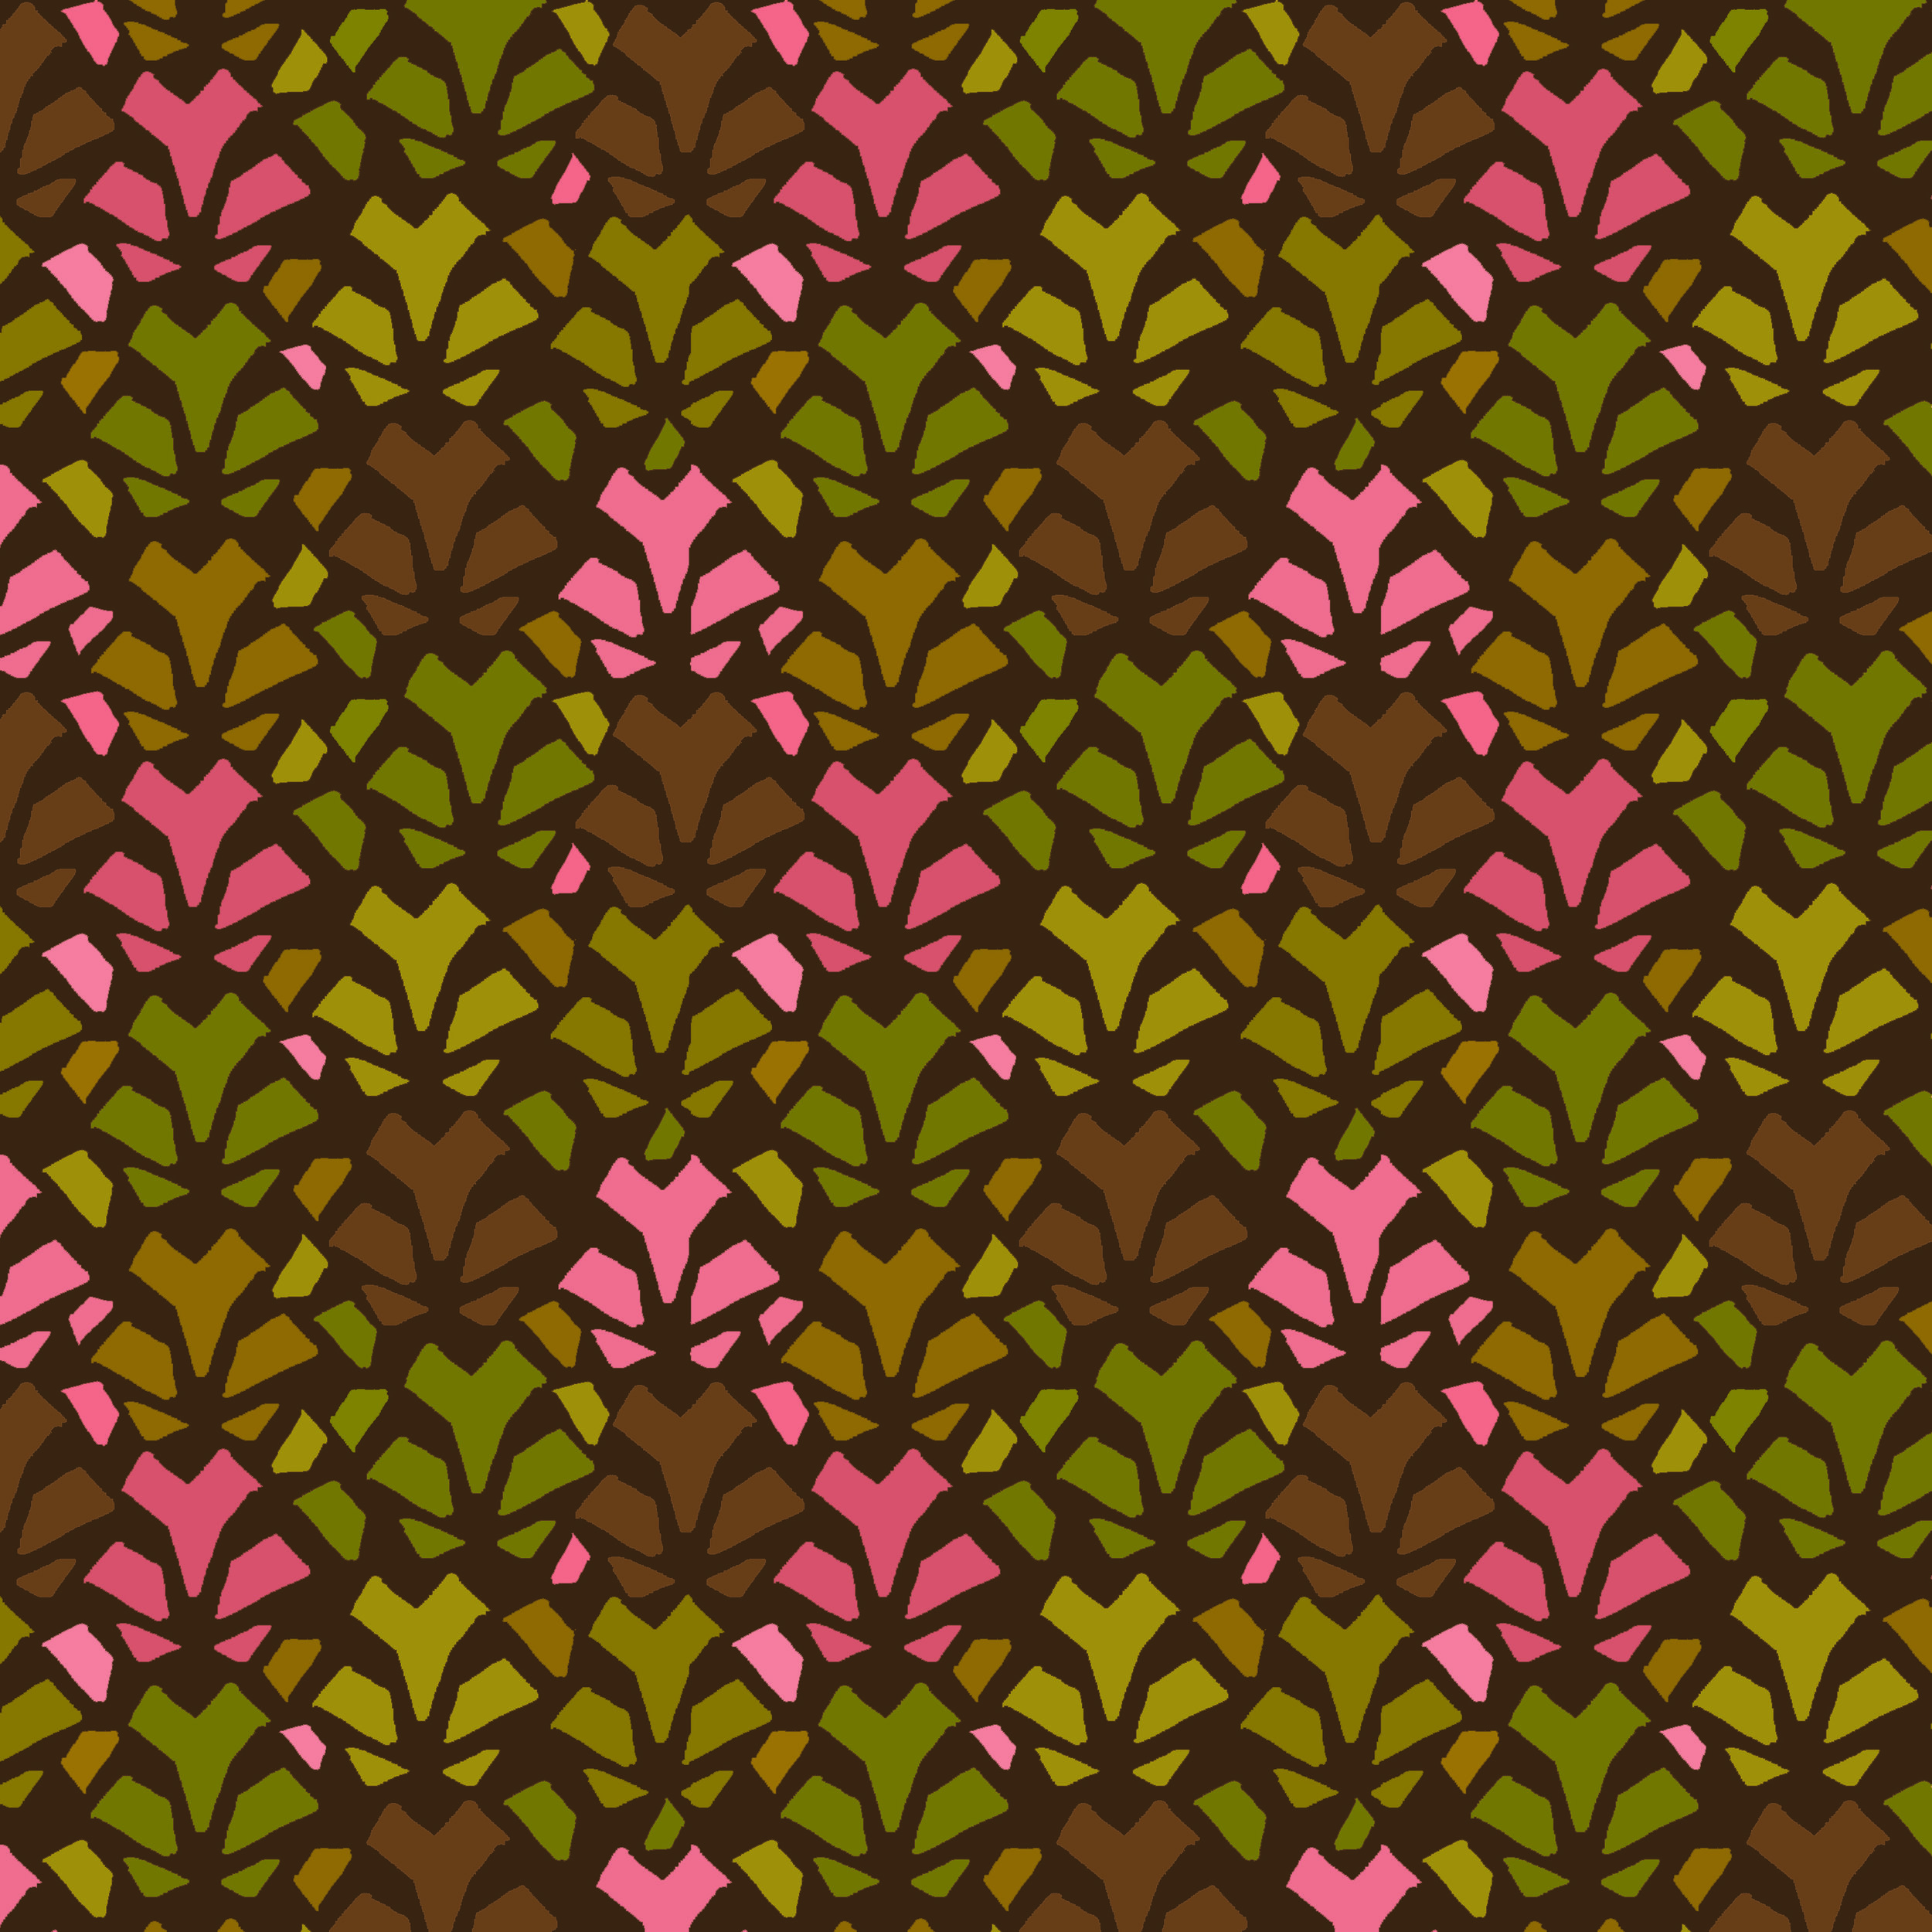 african pattern blender 2 (multiple) drk bgrnd.jpg